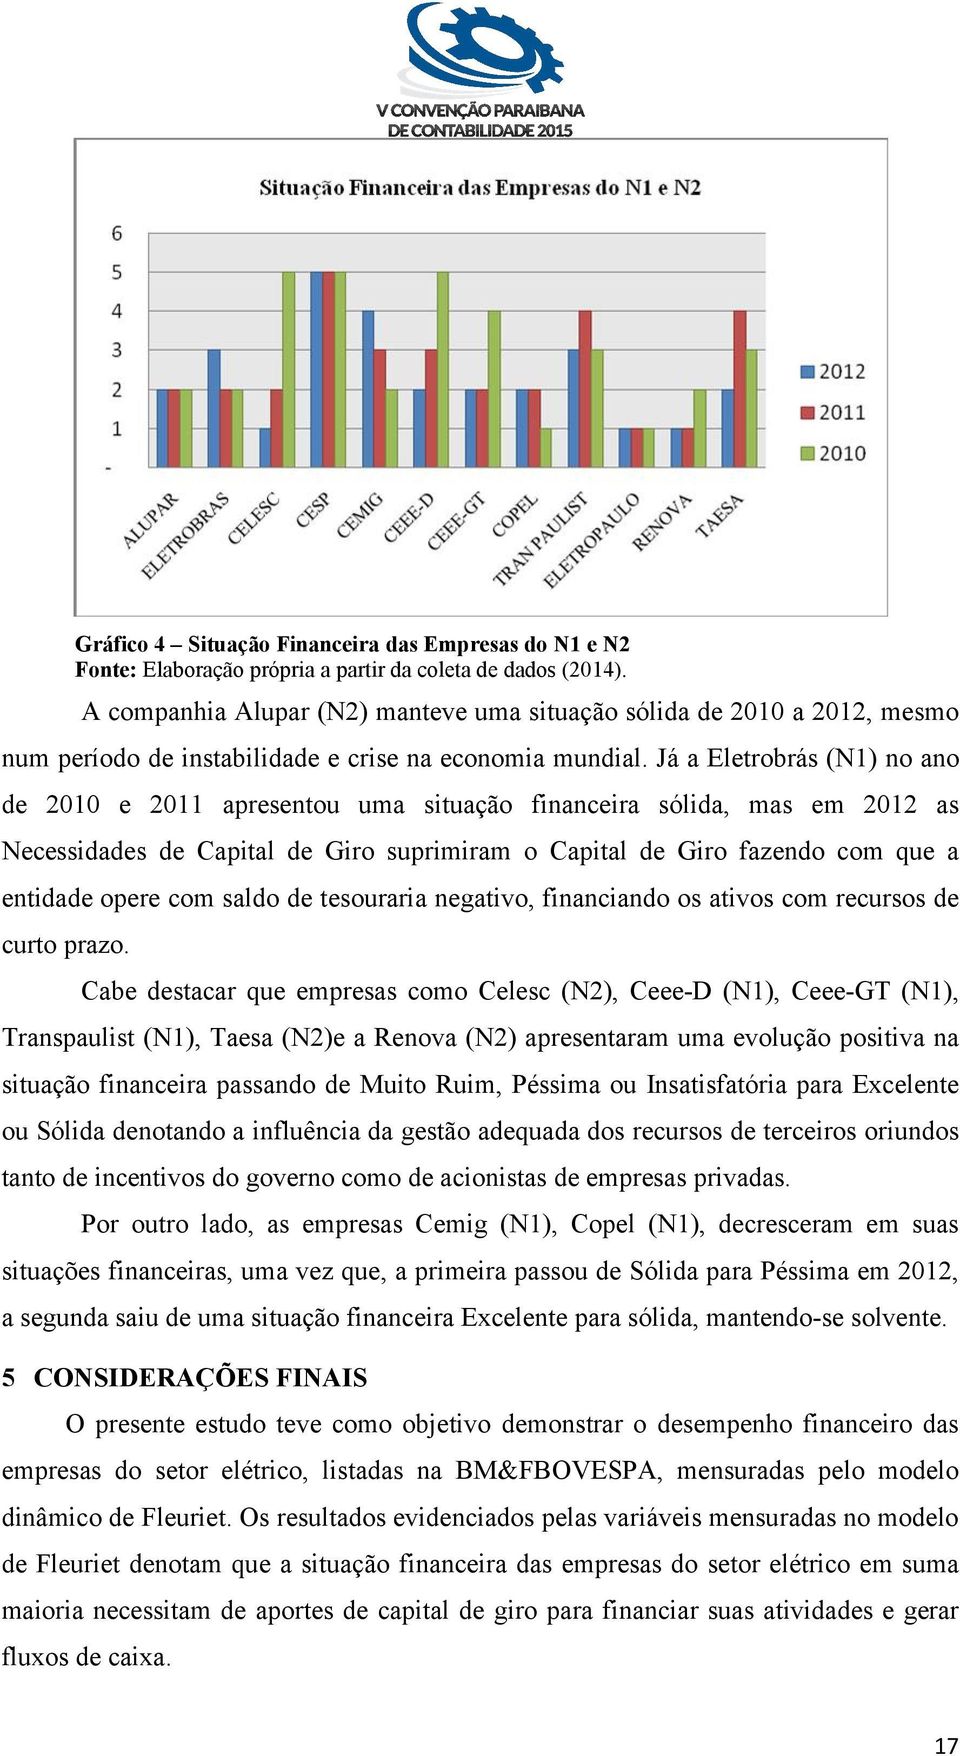 Já a Eletrobrás (N1) no ano de 2010 e 2011 apresentou uma situação financeira sólida, mas em 2012 as Necessidades de Capital de Giro suprimiram o Capital de Giro fazendo com que a entidade opere com